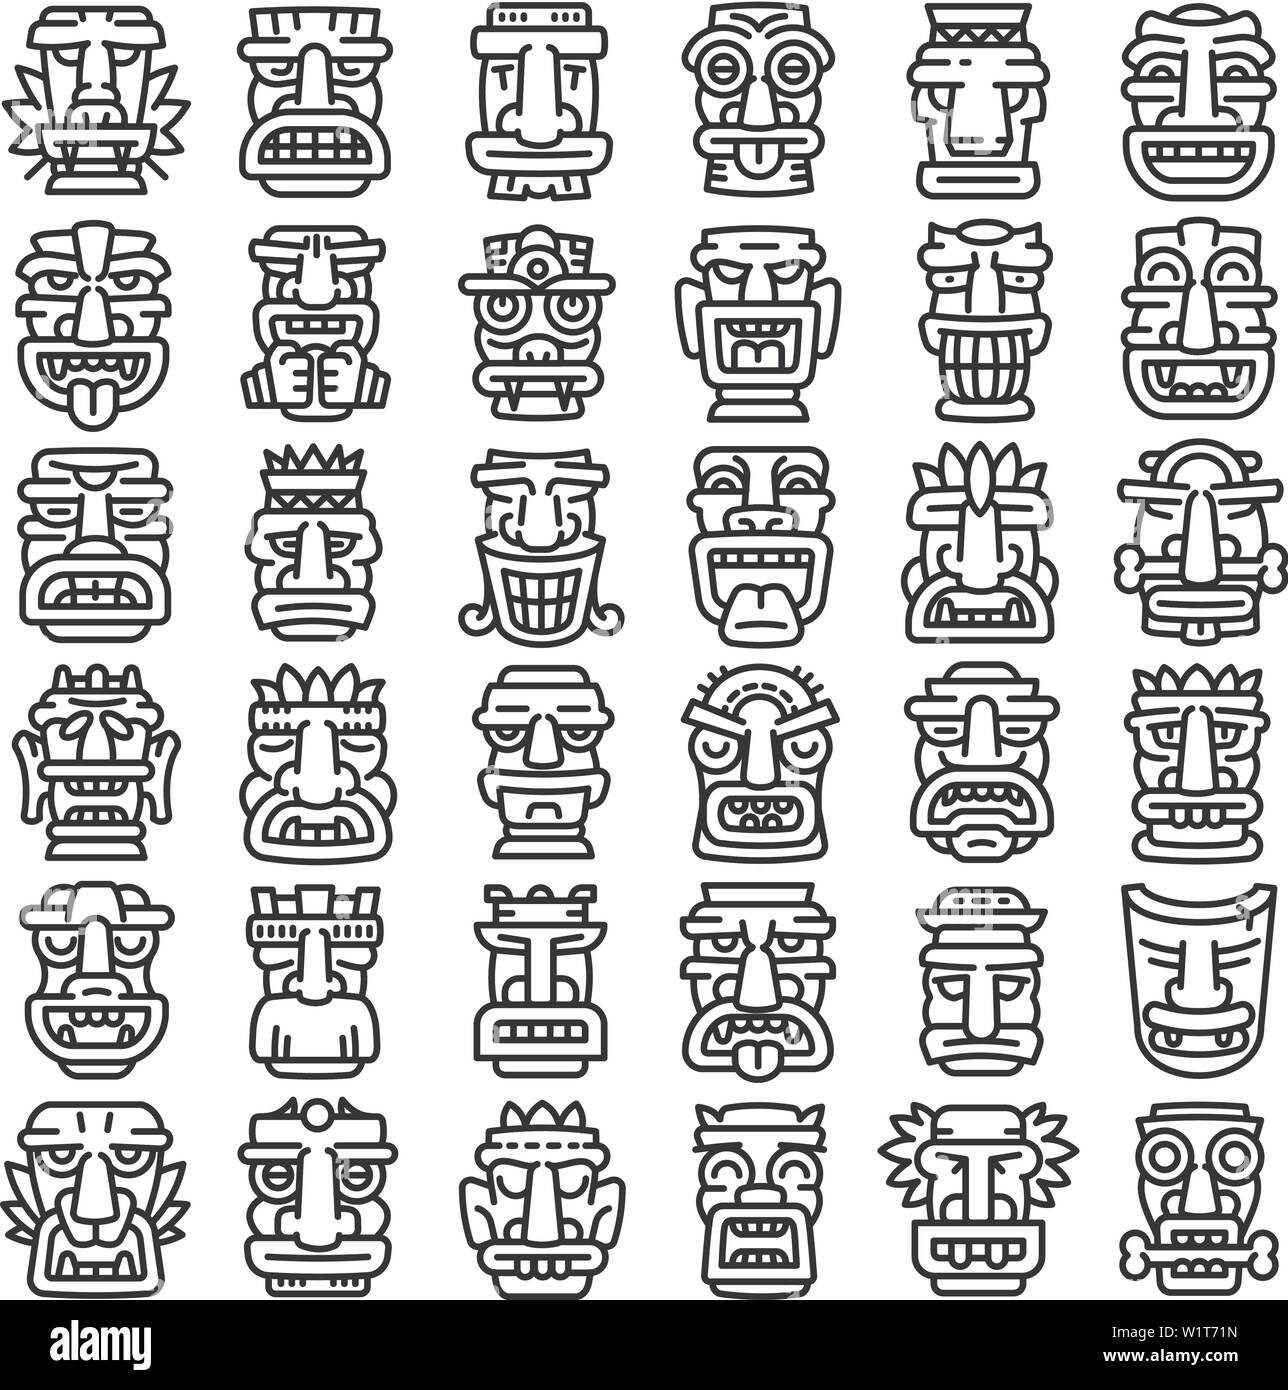 Idoles Tiki icons set. Contours ensemble d'idoles tiki vector icons pour la conception web isolé sur fond blanc Illustration de Vecteur